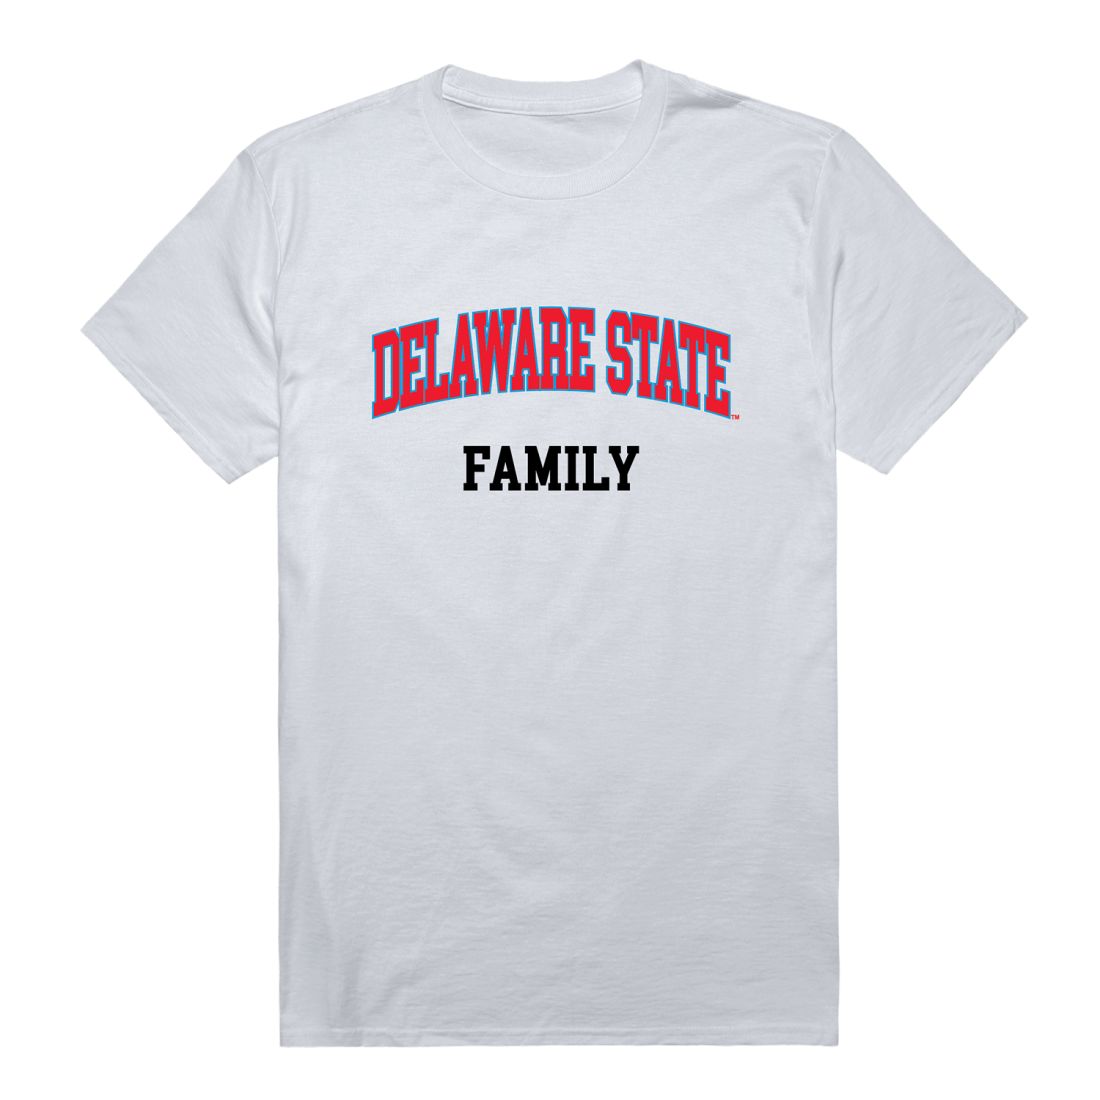 DSU Delaware State University Hornet Family T-Shirt